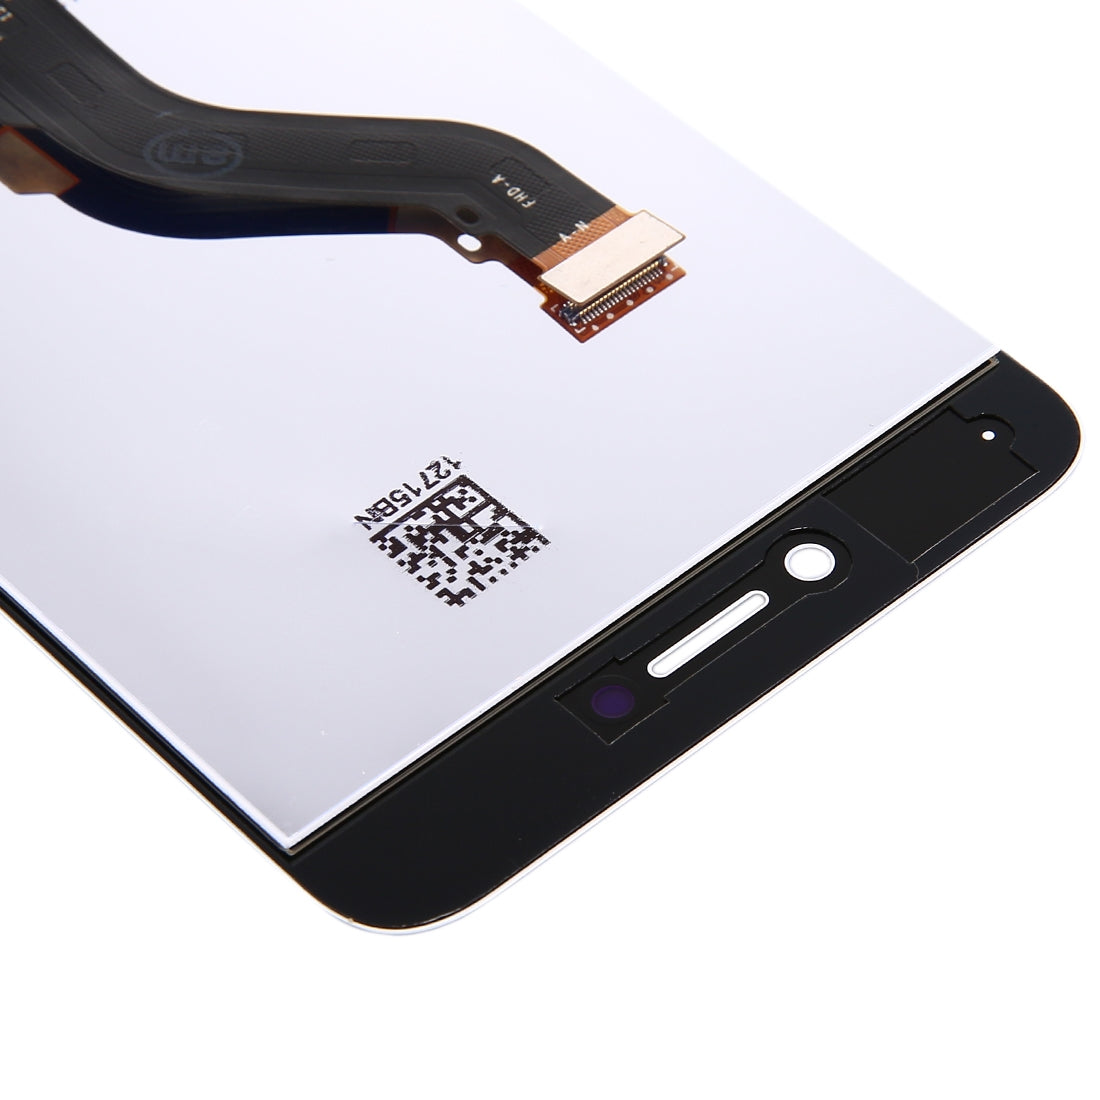 Pantalla LCD + Tactil Digitalizador Huawei P8 Lite 2017 Blanco